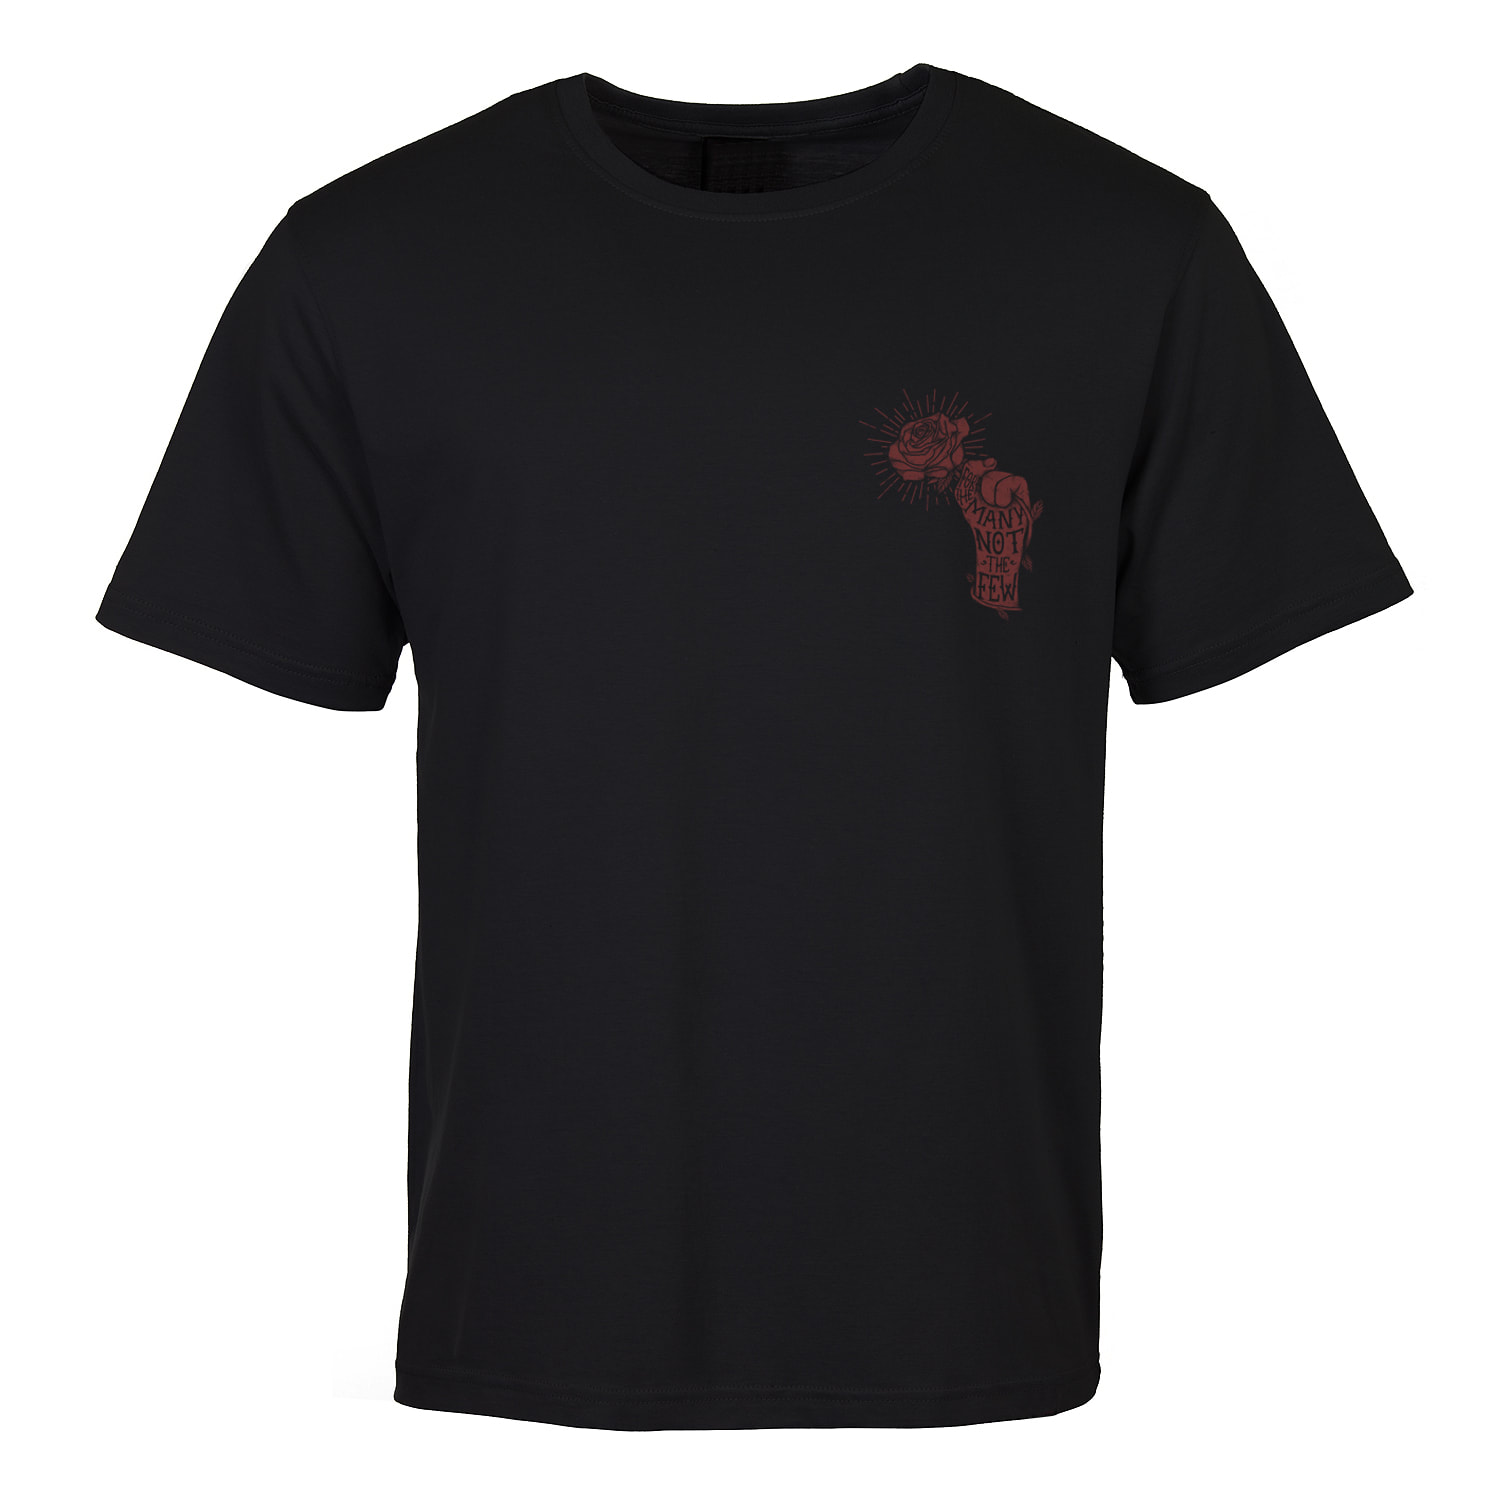 Black Fist T-shirt